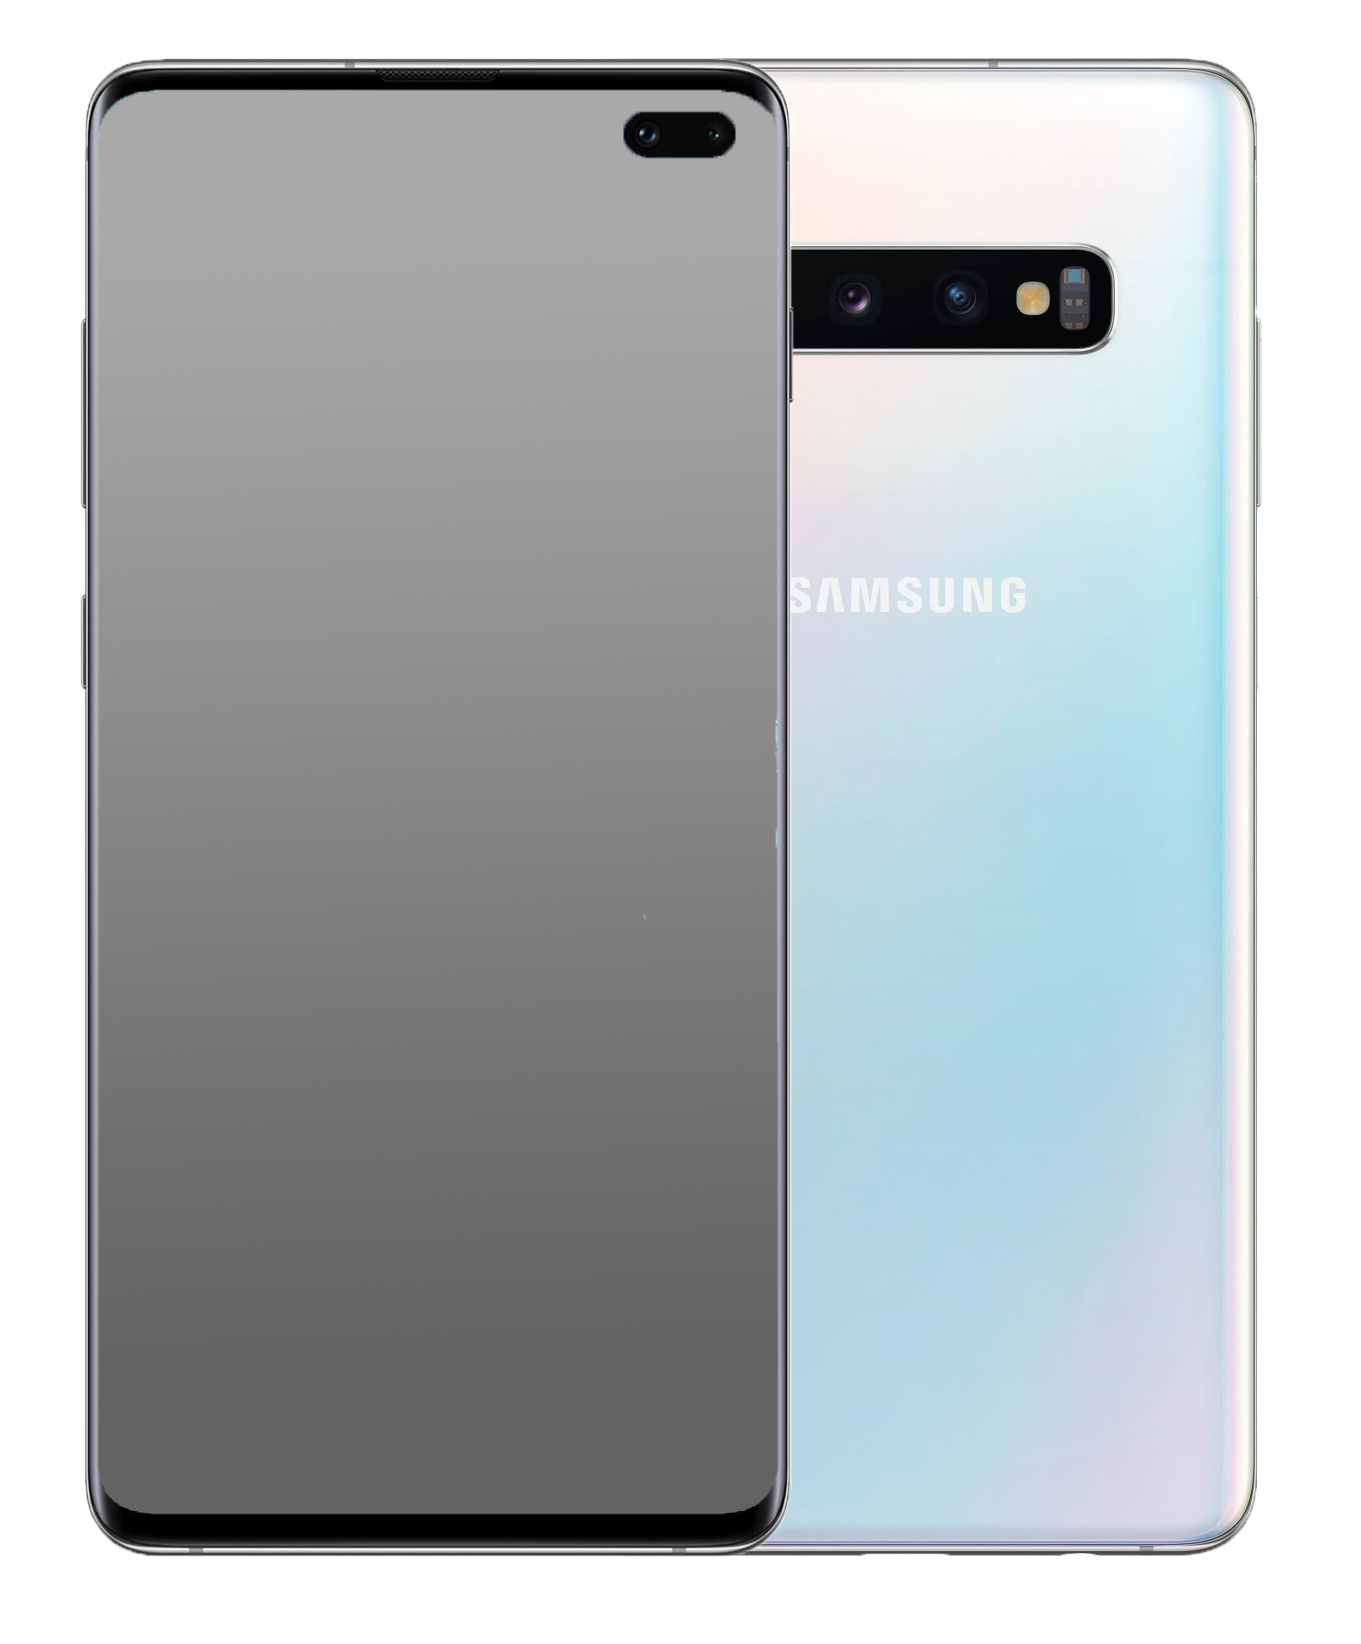 Samsung Galaxy S10+ Plus Dual-SIM glanz weiß - Ohne Vertrag